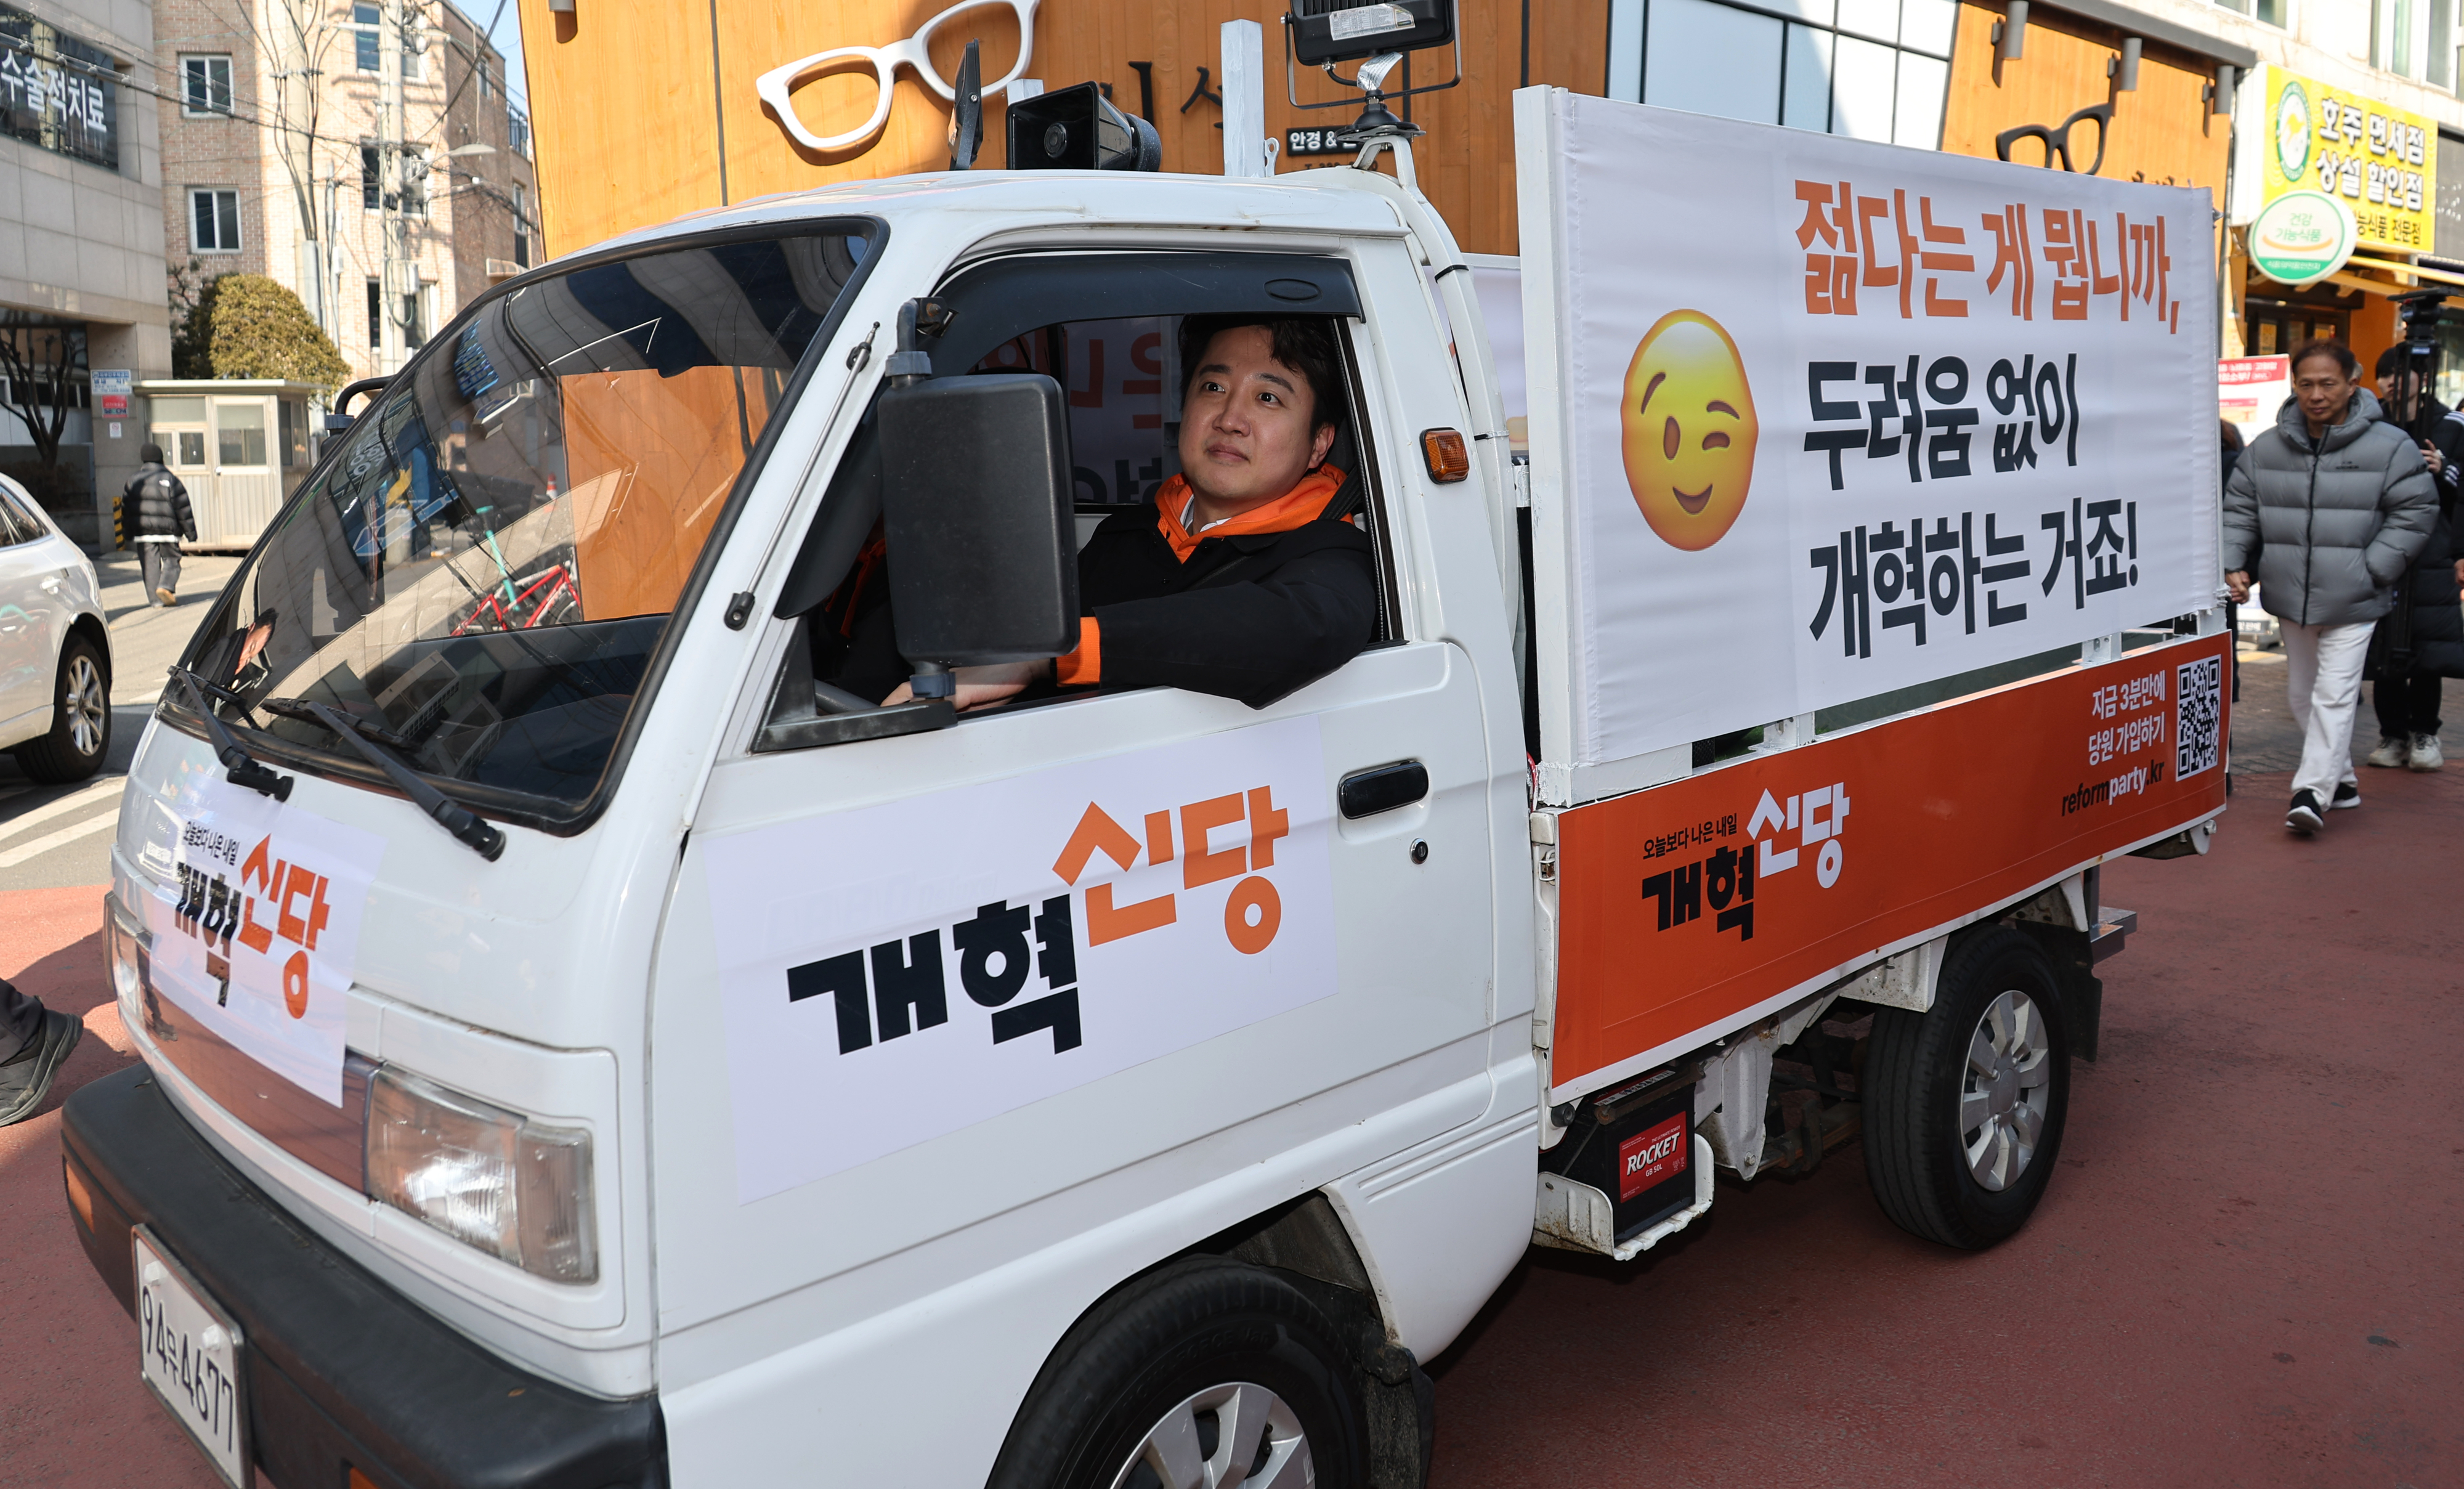 28일 서울 마포구 망원시장에서 용달차 ‘라보’를 운전하며 거리 인사를 하고 있는 이준석 개혁신당 대표. 연합뉴스